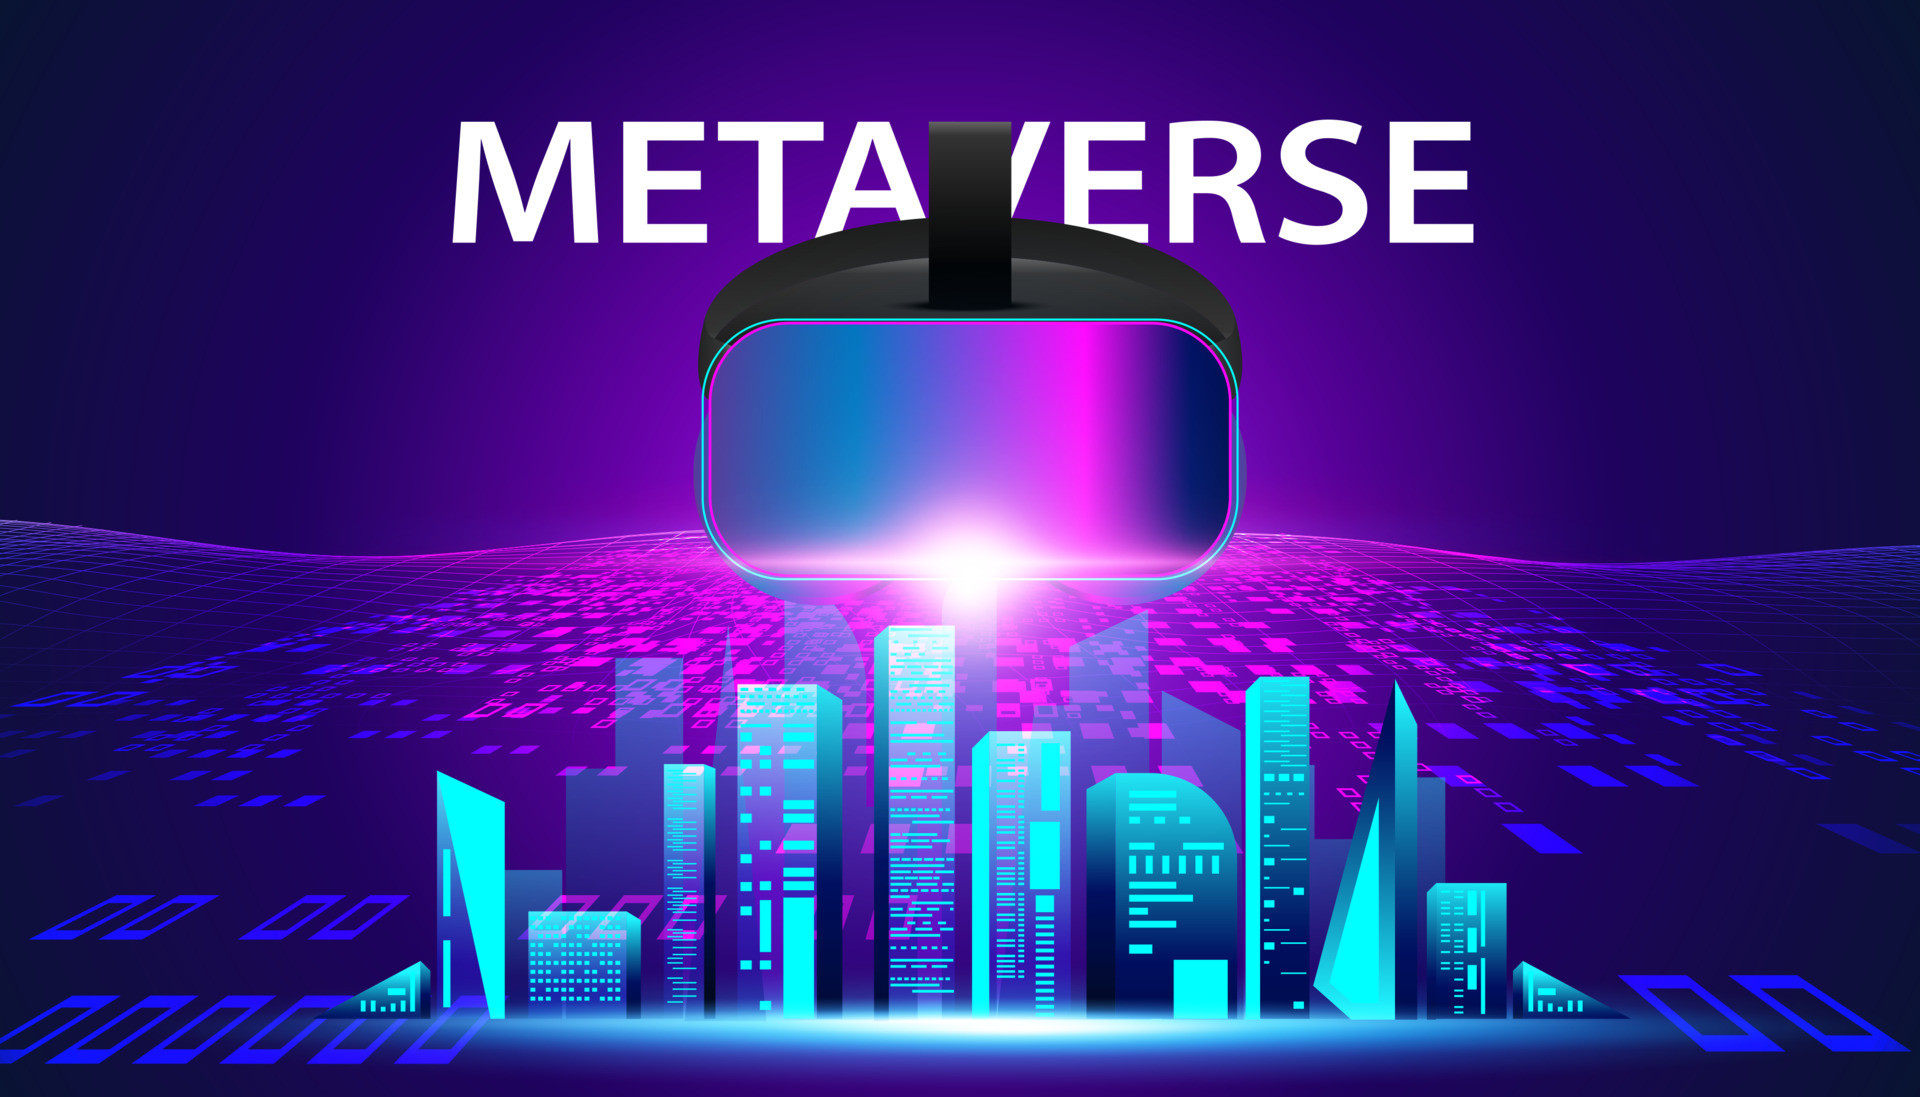 Resumo metaverse virtual reality mapa de conceito colorido do futuro  metaverso de tecnologia digital